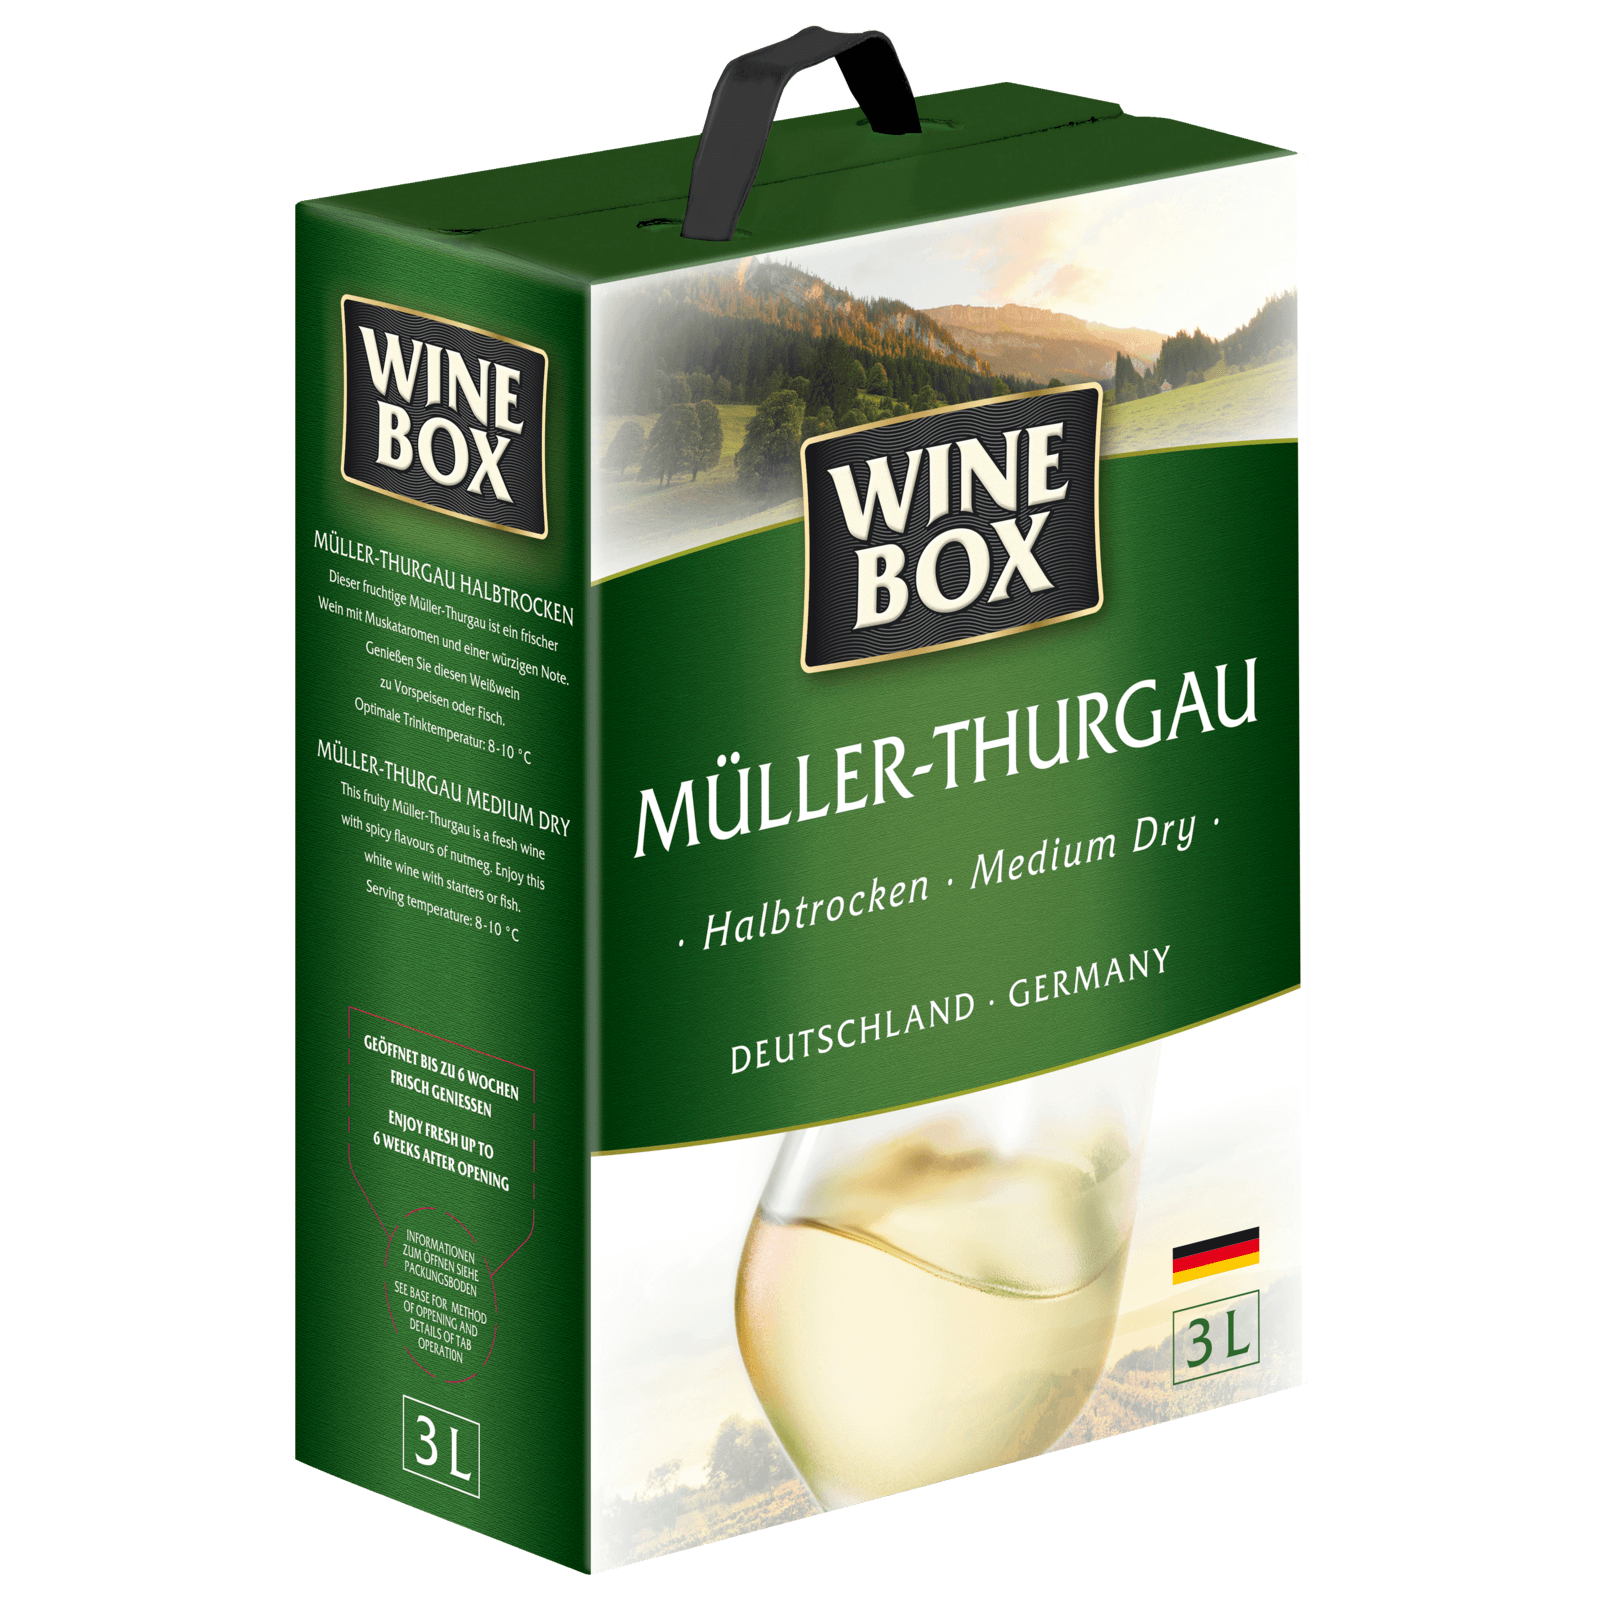 Wine Box Weißwein Müller-Thurgau halbtrocken 3l  für 10.99 EUR